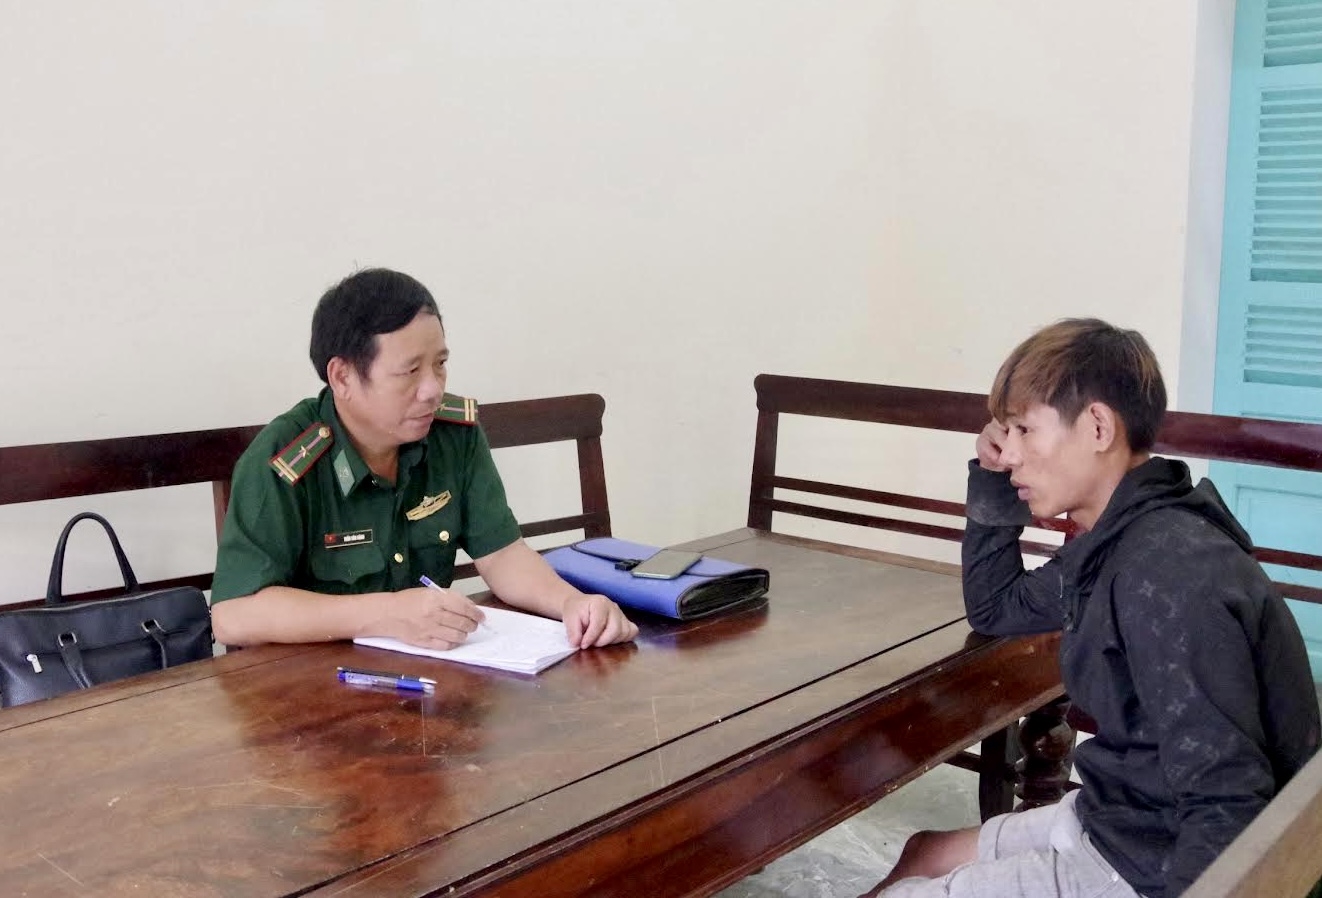 Sau khi bị bắt giữ, đối tượng Nguyễn Văn Hòa khai nhận hành vi vận chuyển pháo nổ trái phép qua biên giới